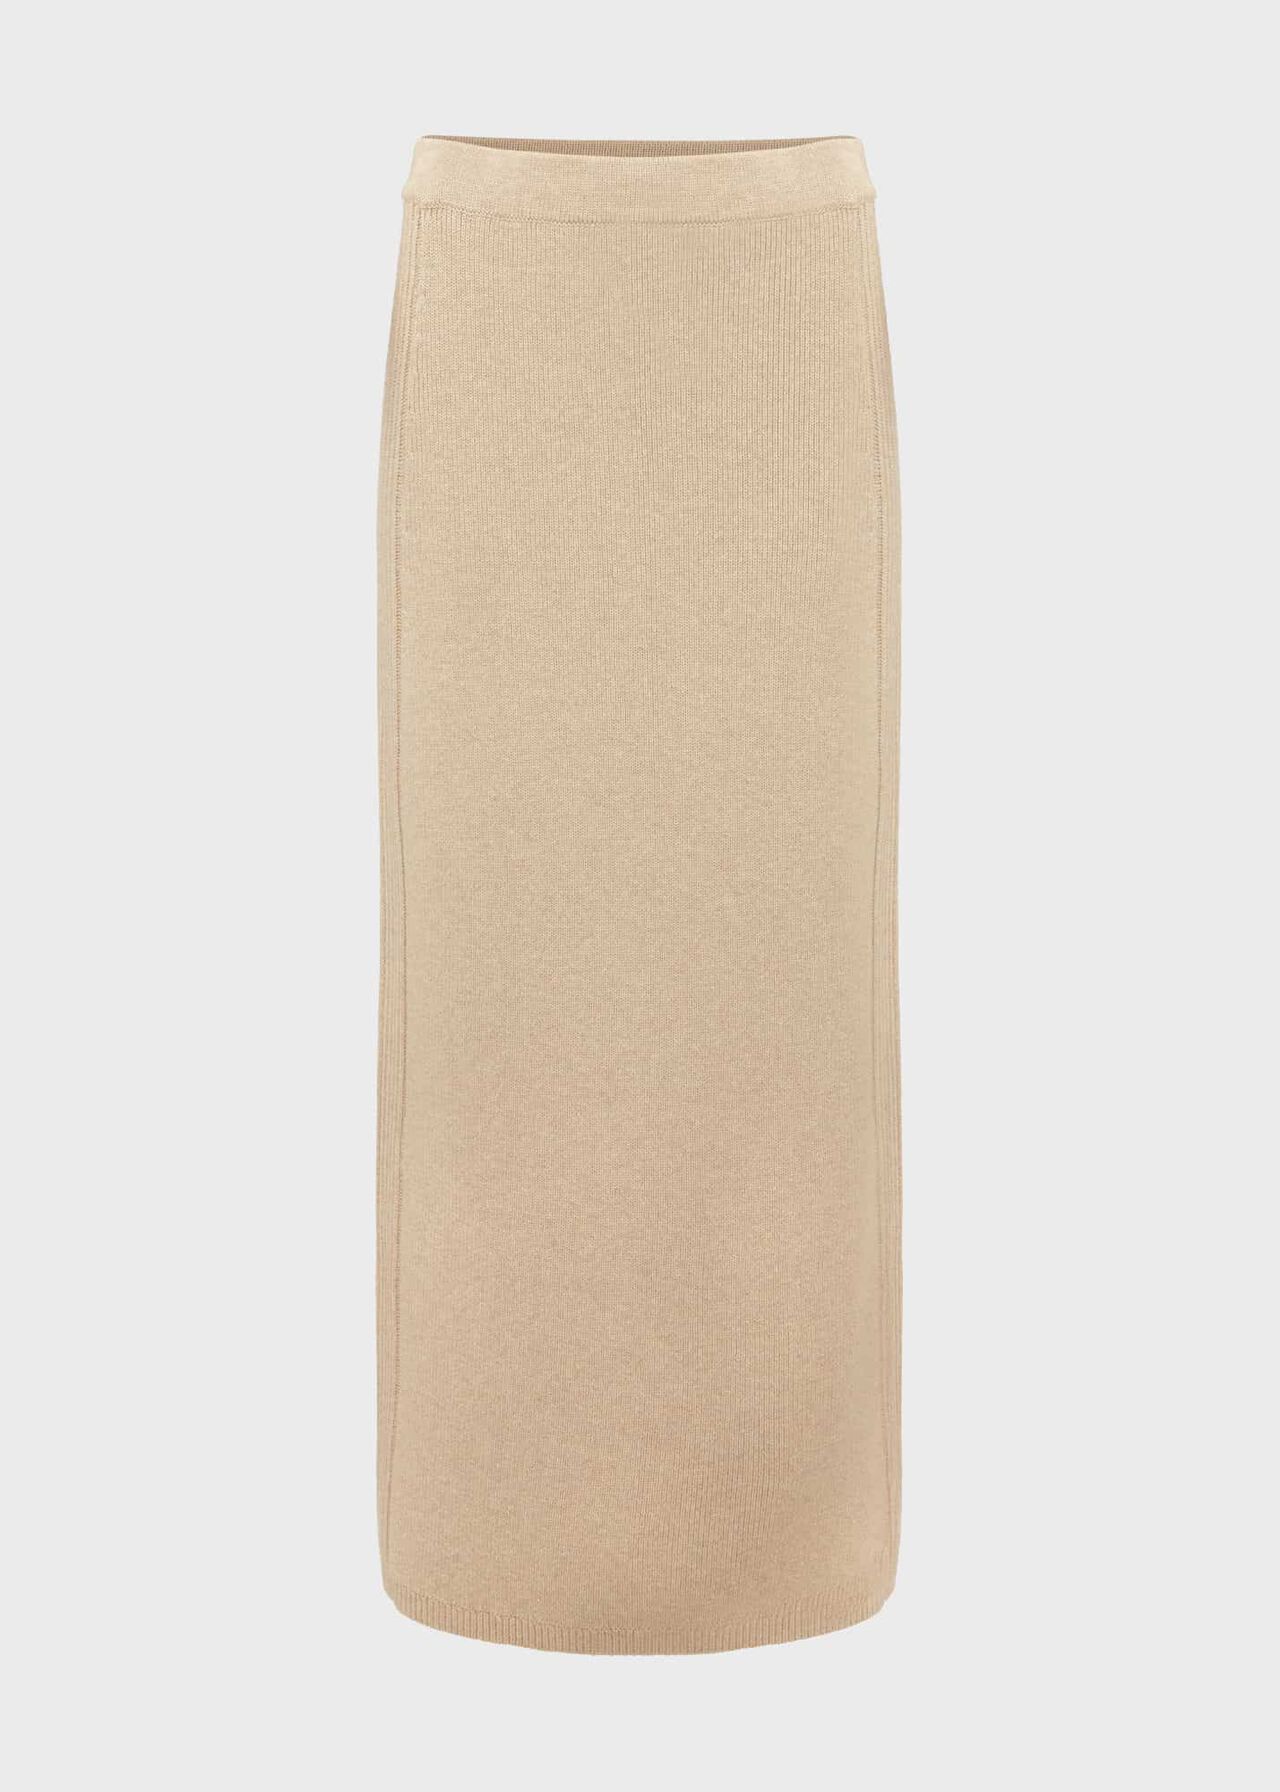 Lovell Co-Ord Skirt, Oatmeal Marl, hi-res